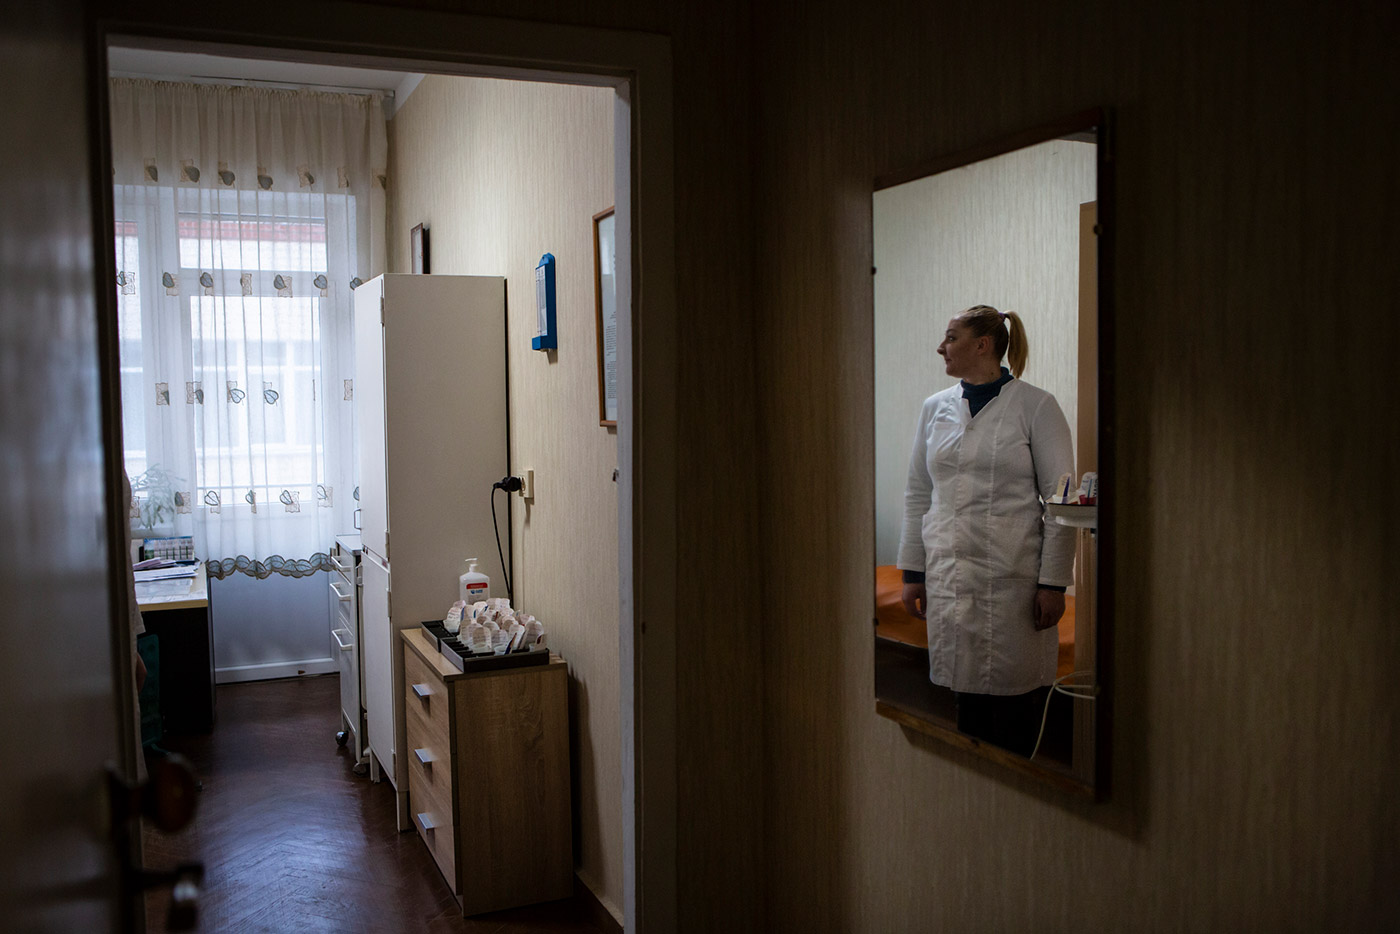 The invisible wounds of war - Ukraine, 2022 - Michele Cirillo